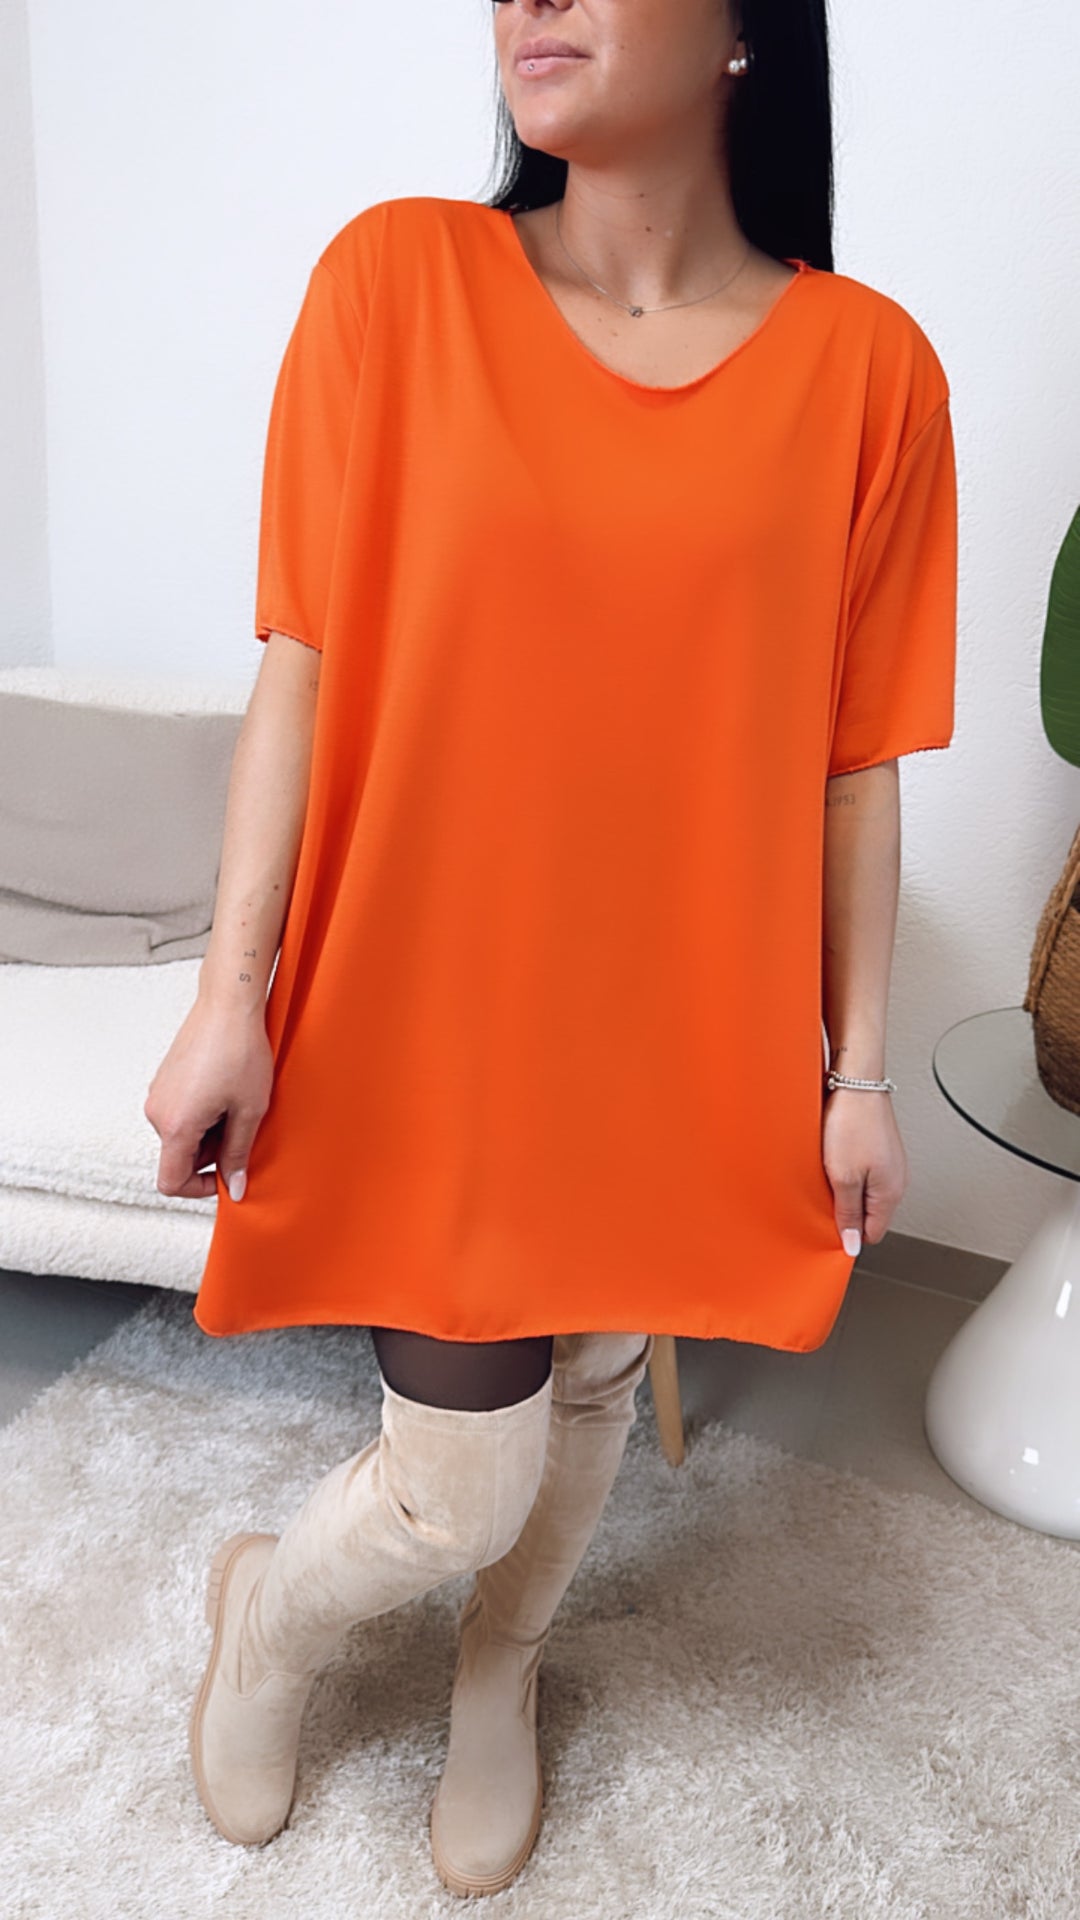 luftiges, langes T-shirt / intensives orange Art. 5613